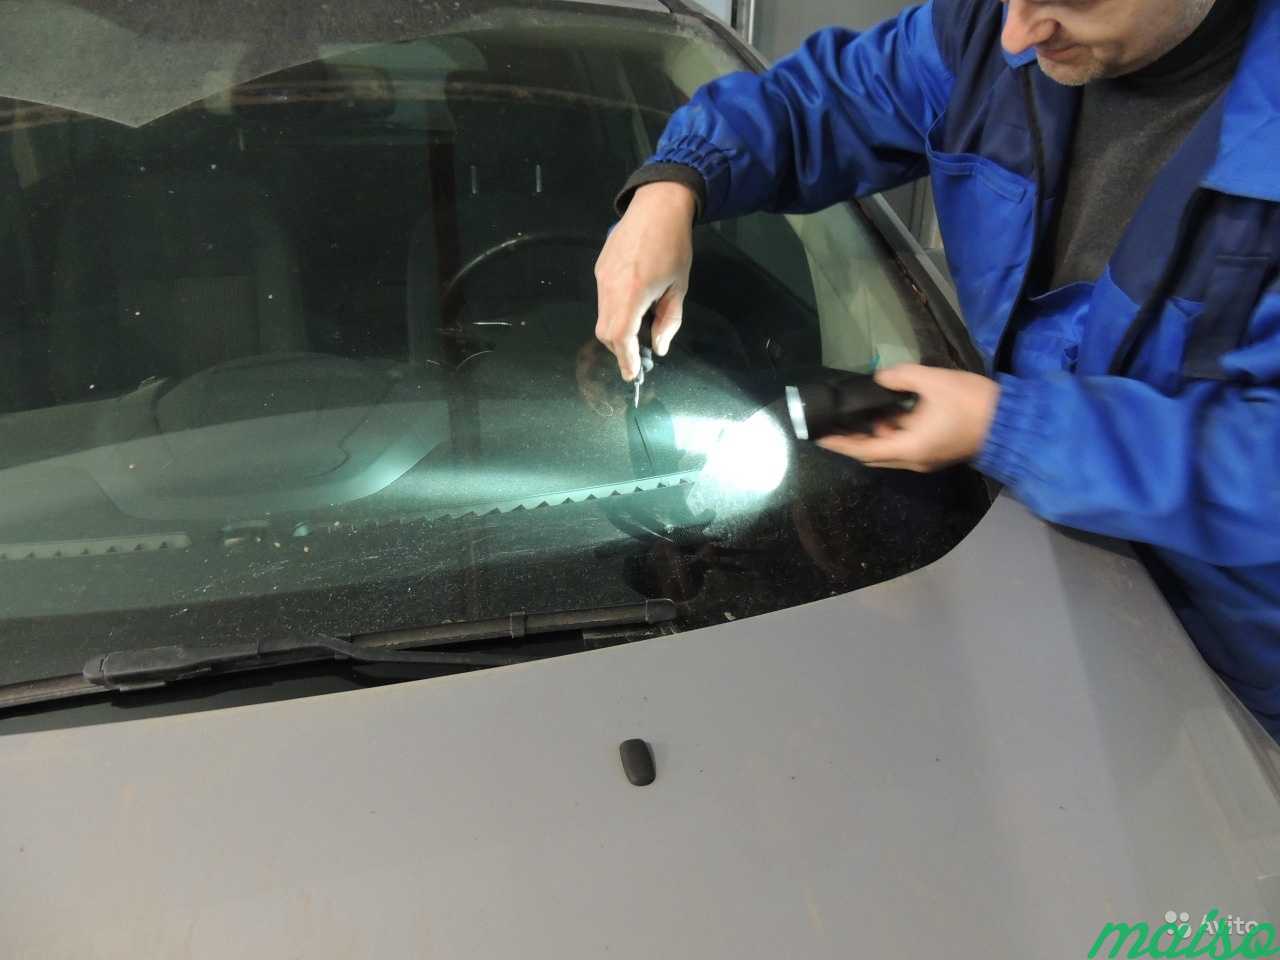 Автостекла ремонт трещин стекла. Фирмы лобовых стекол. Шлифовка сколов на стеклянной вазе. Процесс образования скола на автомобильном стекле. Ремонт сколов и трещин на лобовом стекле.